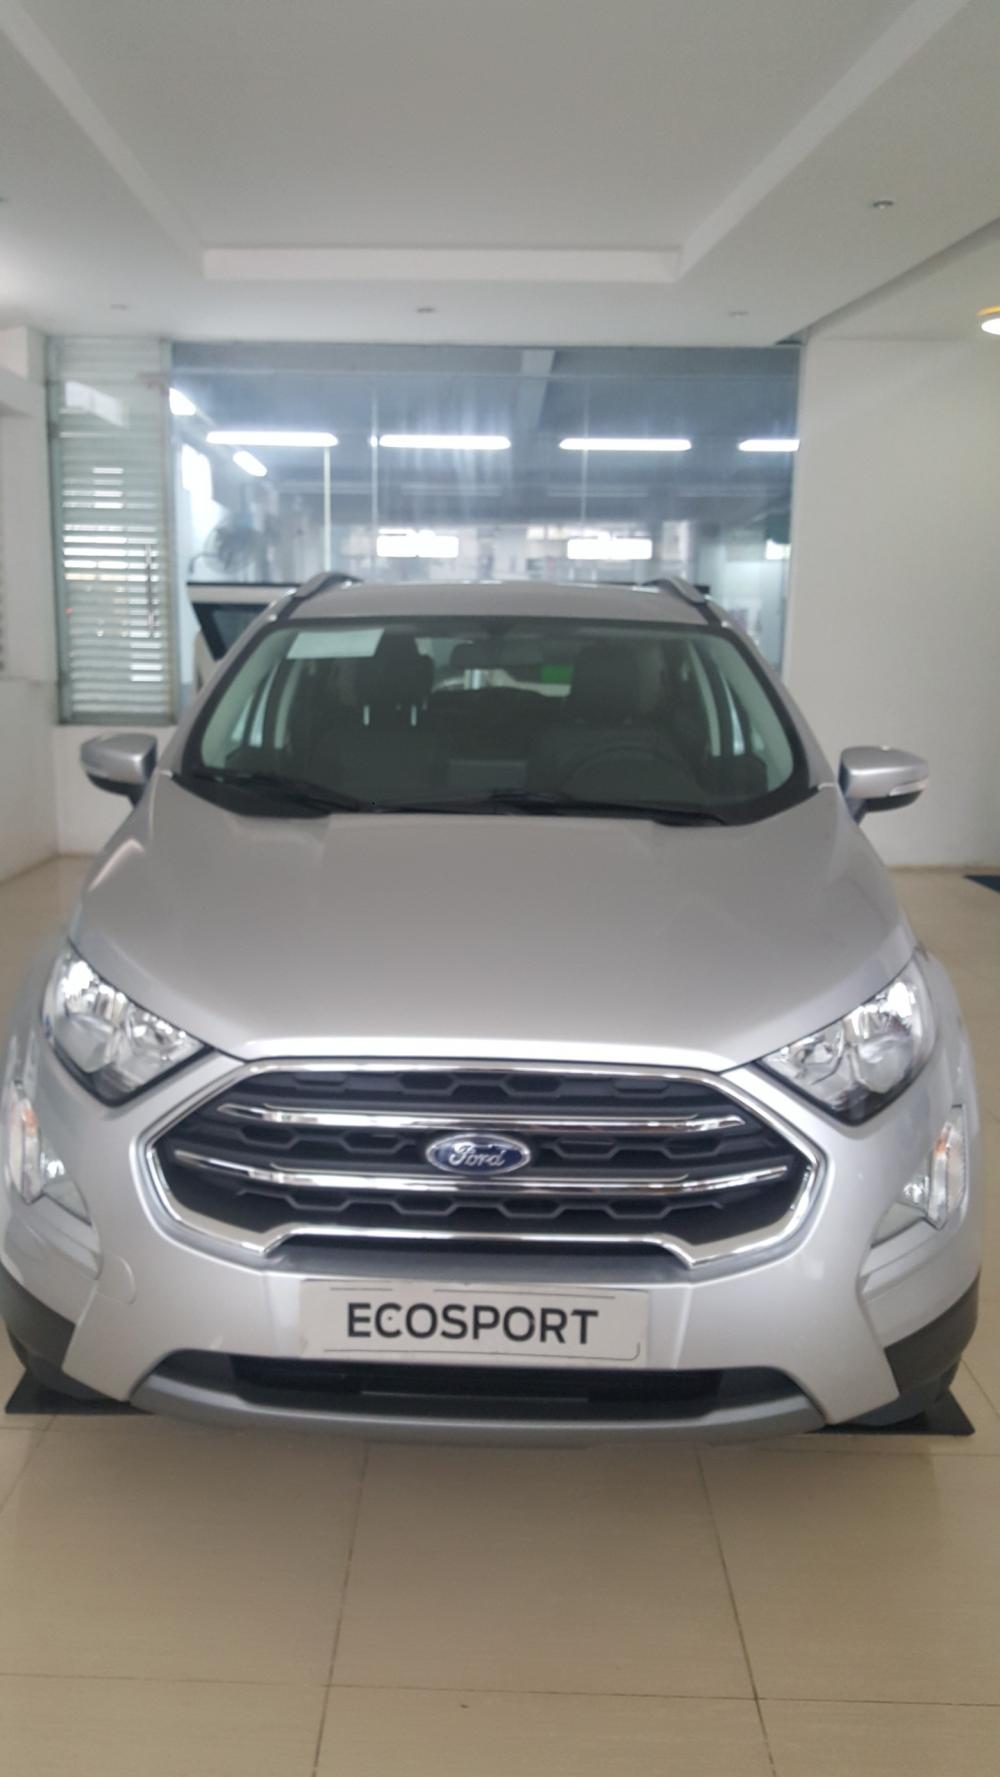 Bán xe Ford Ecosport 2019 mới giá tốt, liên hệ 0865660630-0